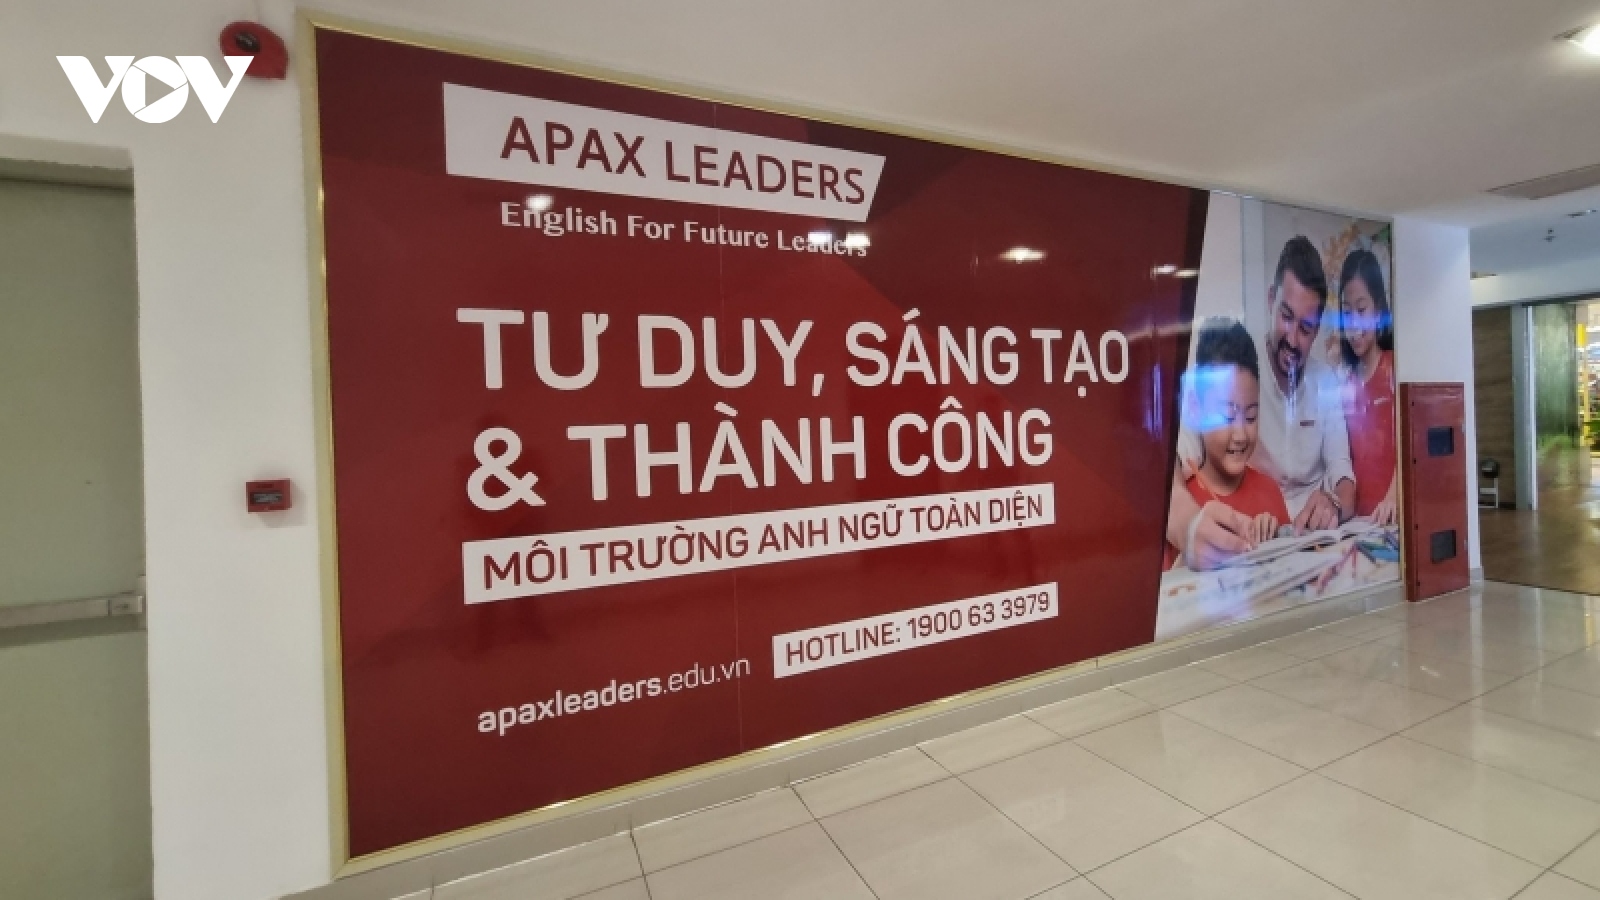 Khánh Hòa yêu cầu Trung tâm Anh ngữ Apax Leaders hoàn trả học phí cho học viên